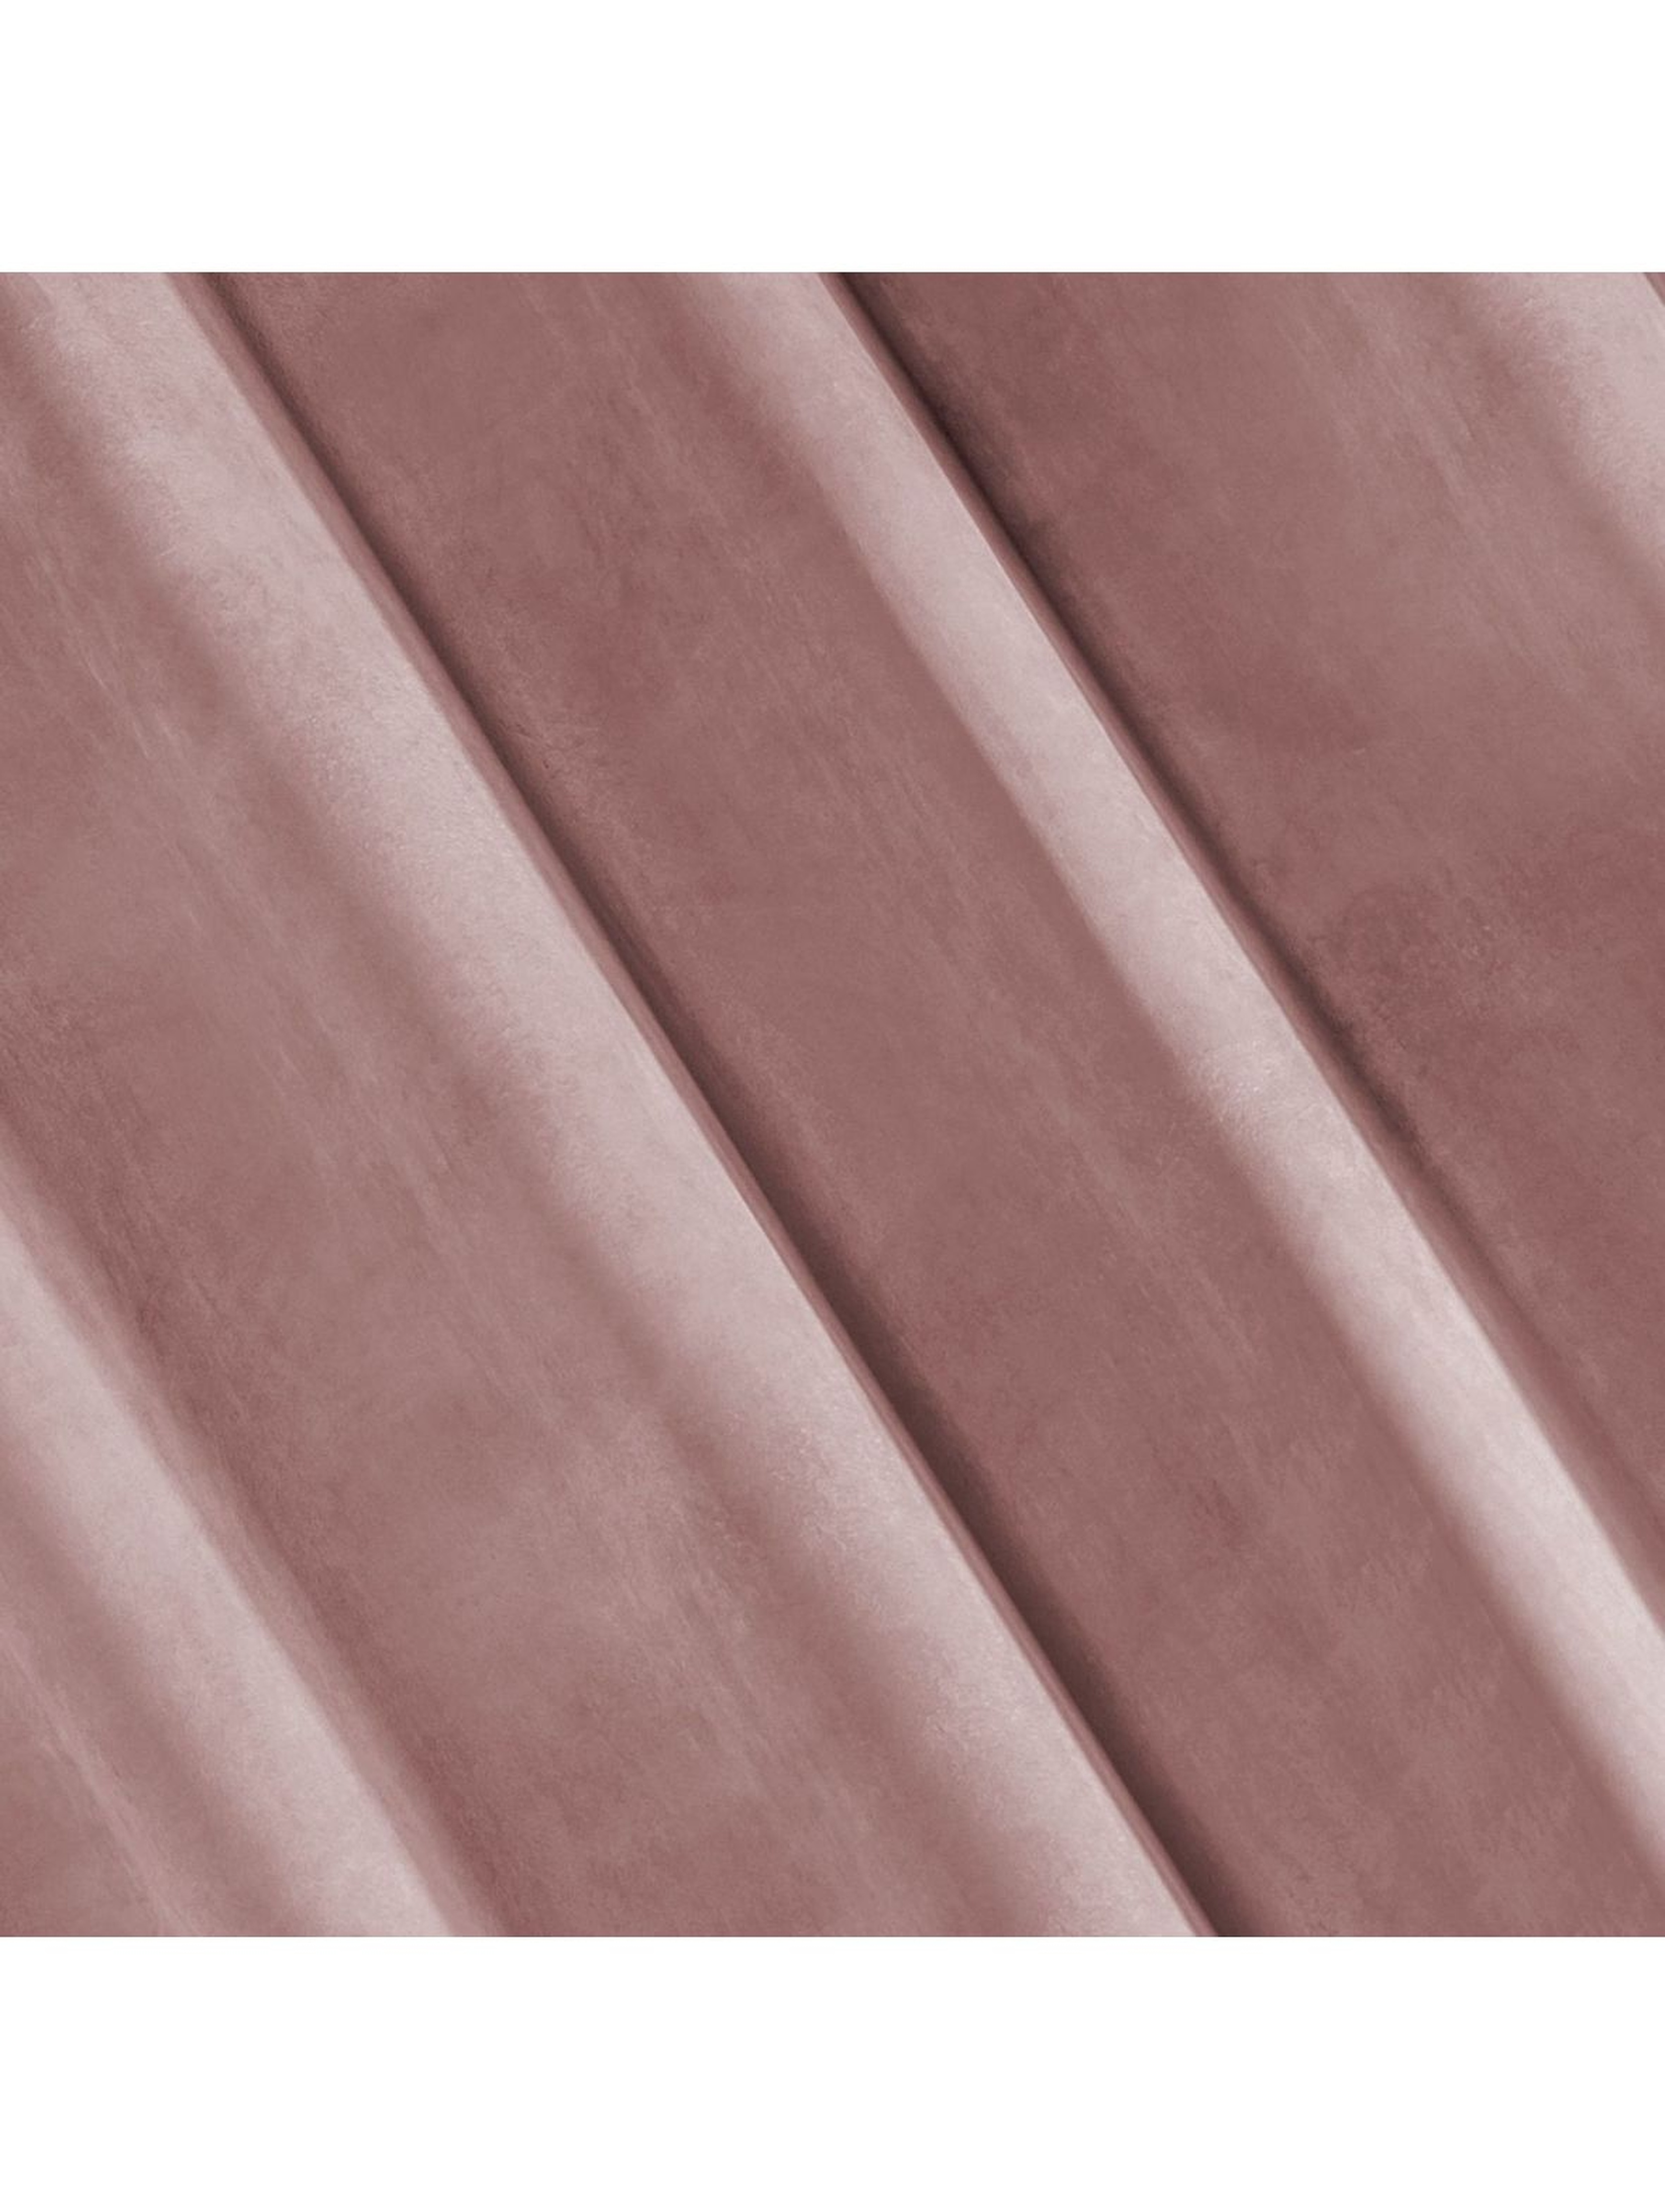 Zasłona jednokolorowa - różowa - 140x170cm